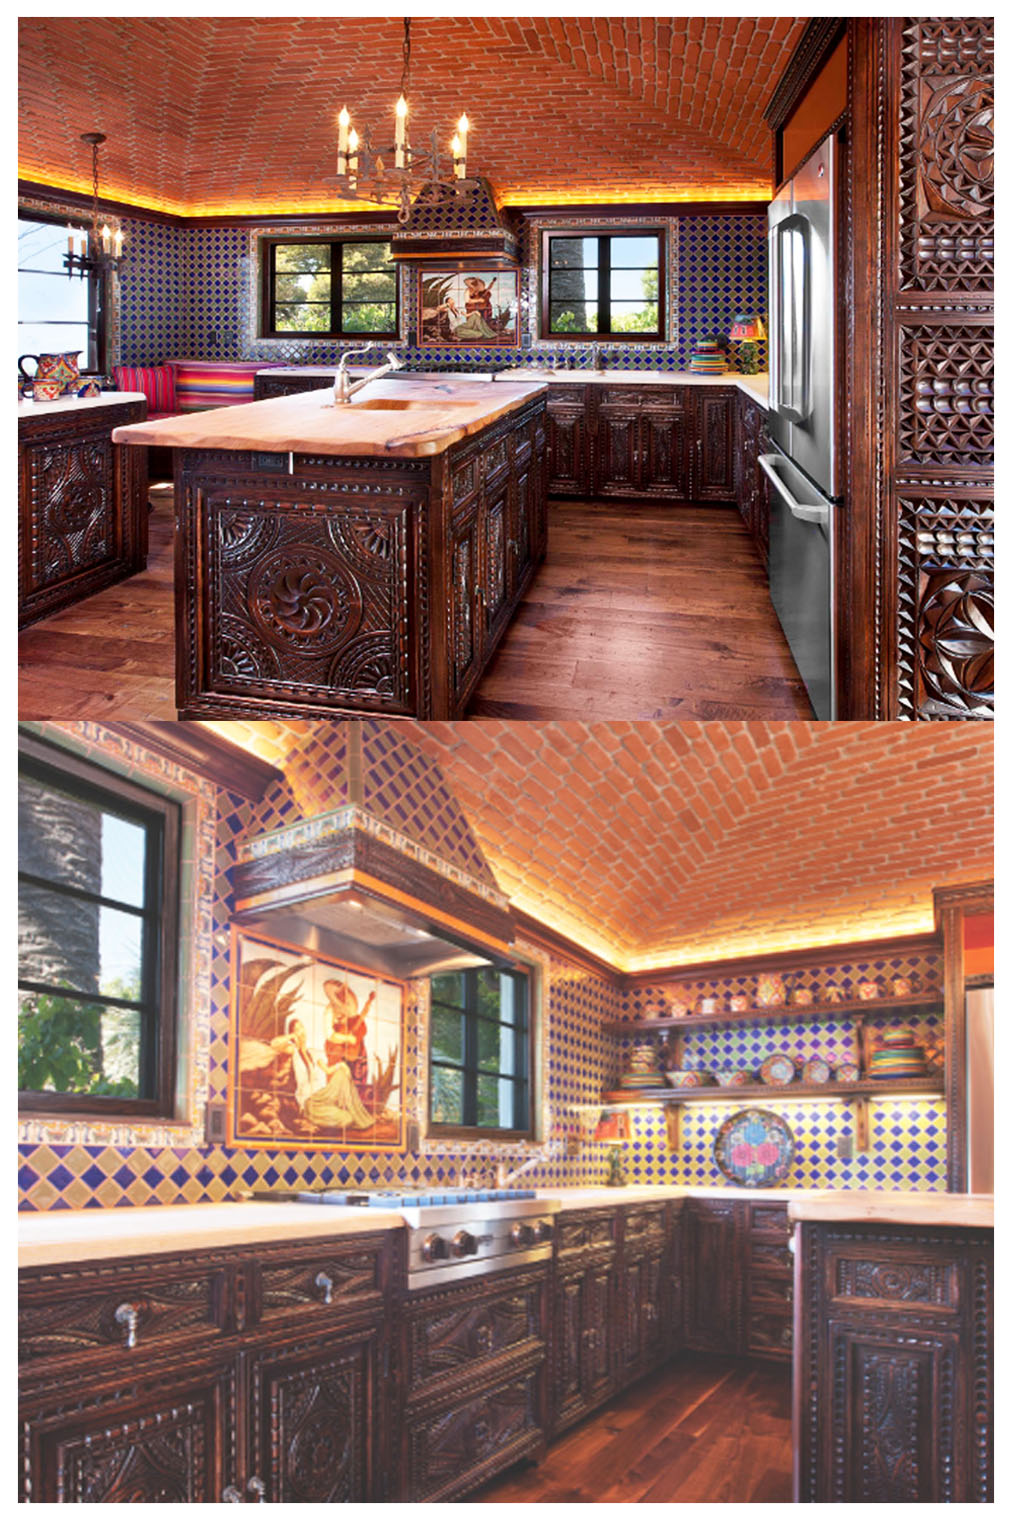 spanish style kitchen design ideas